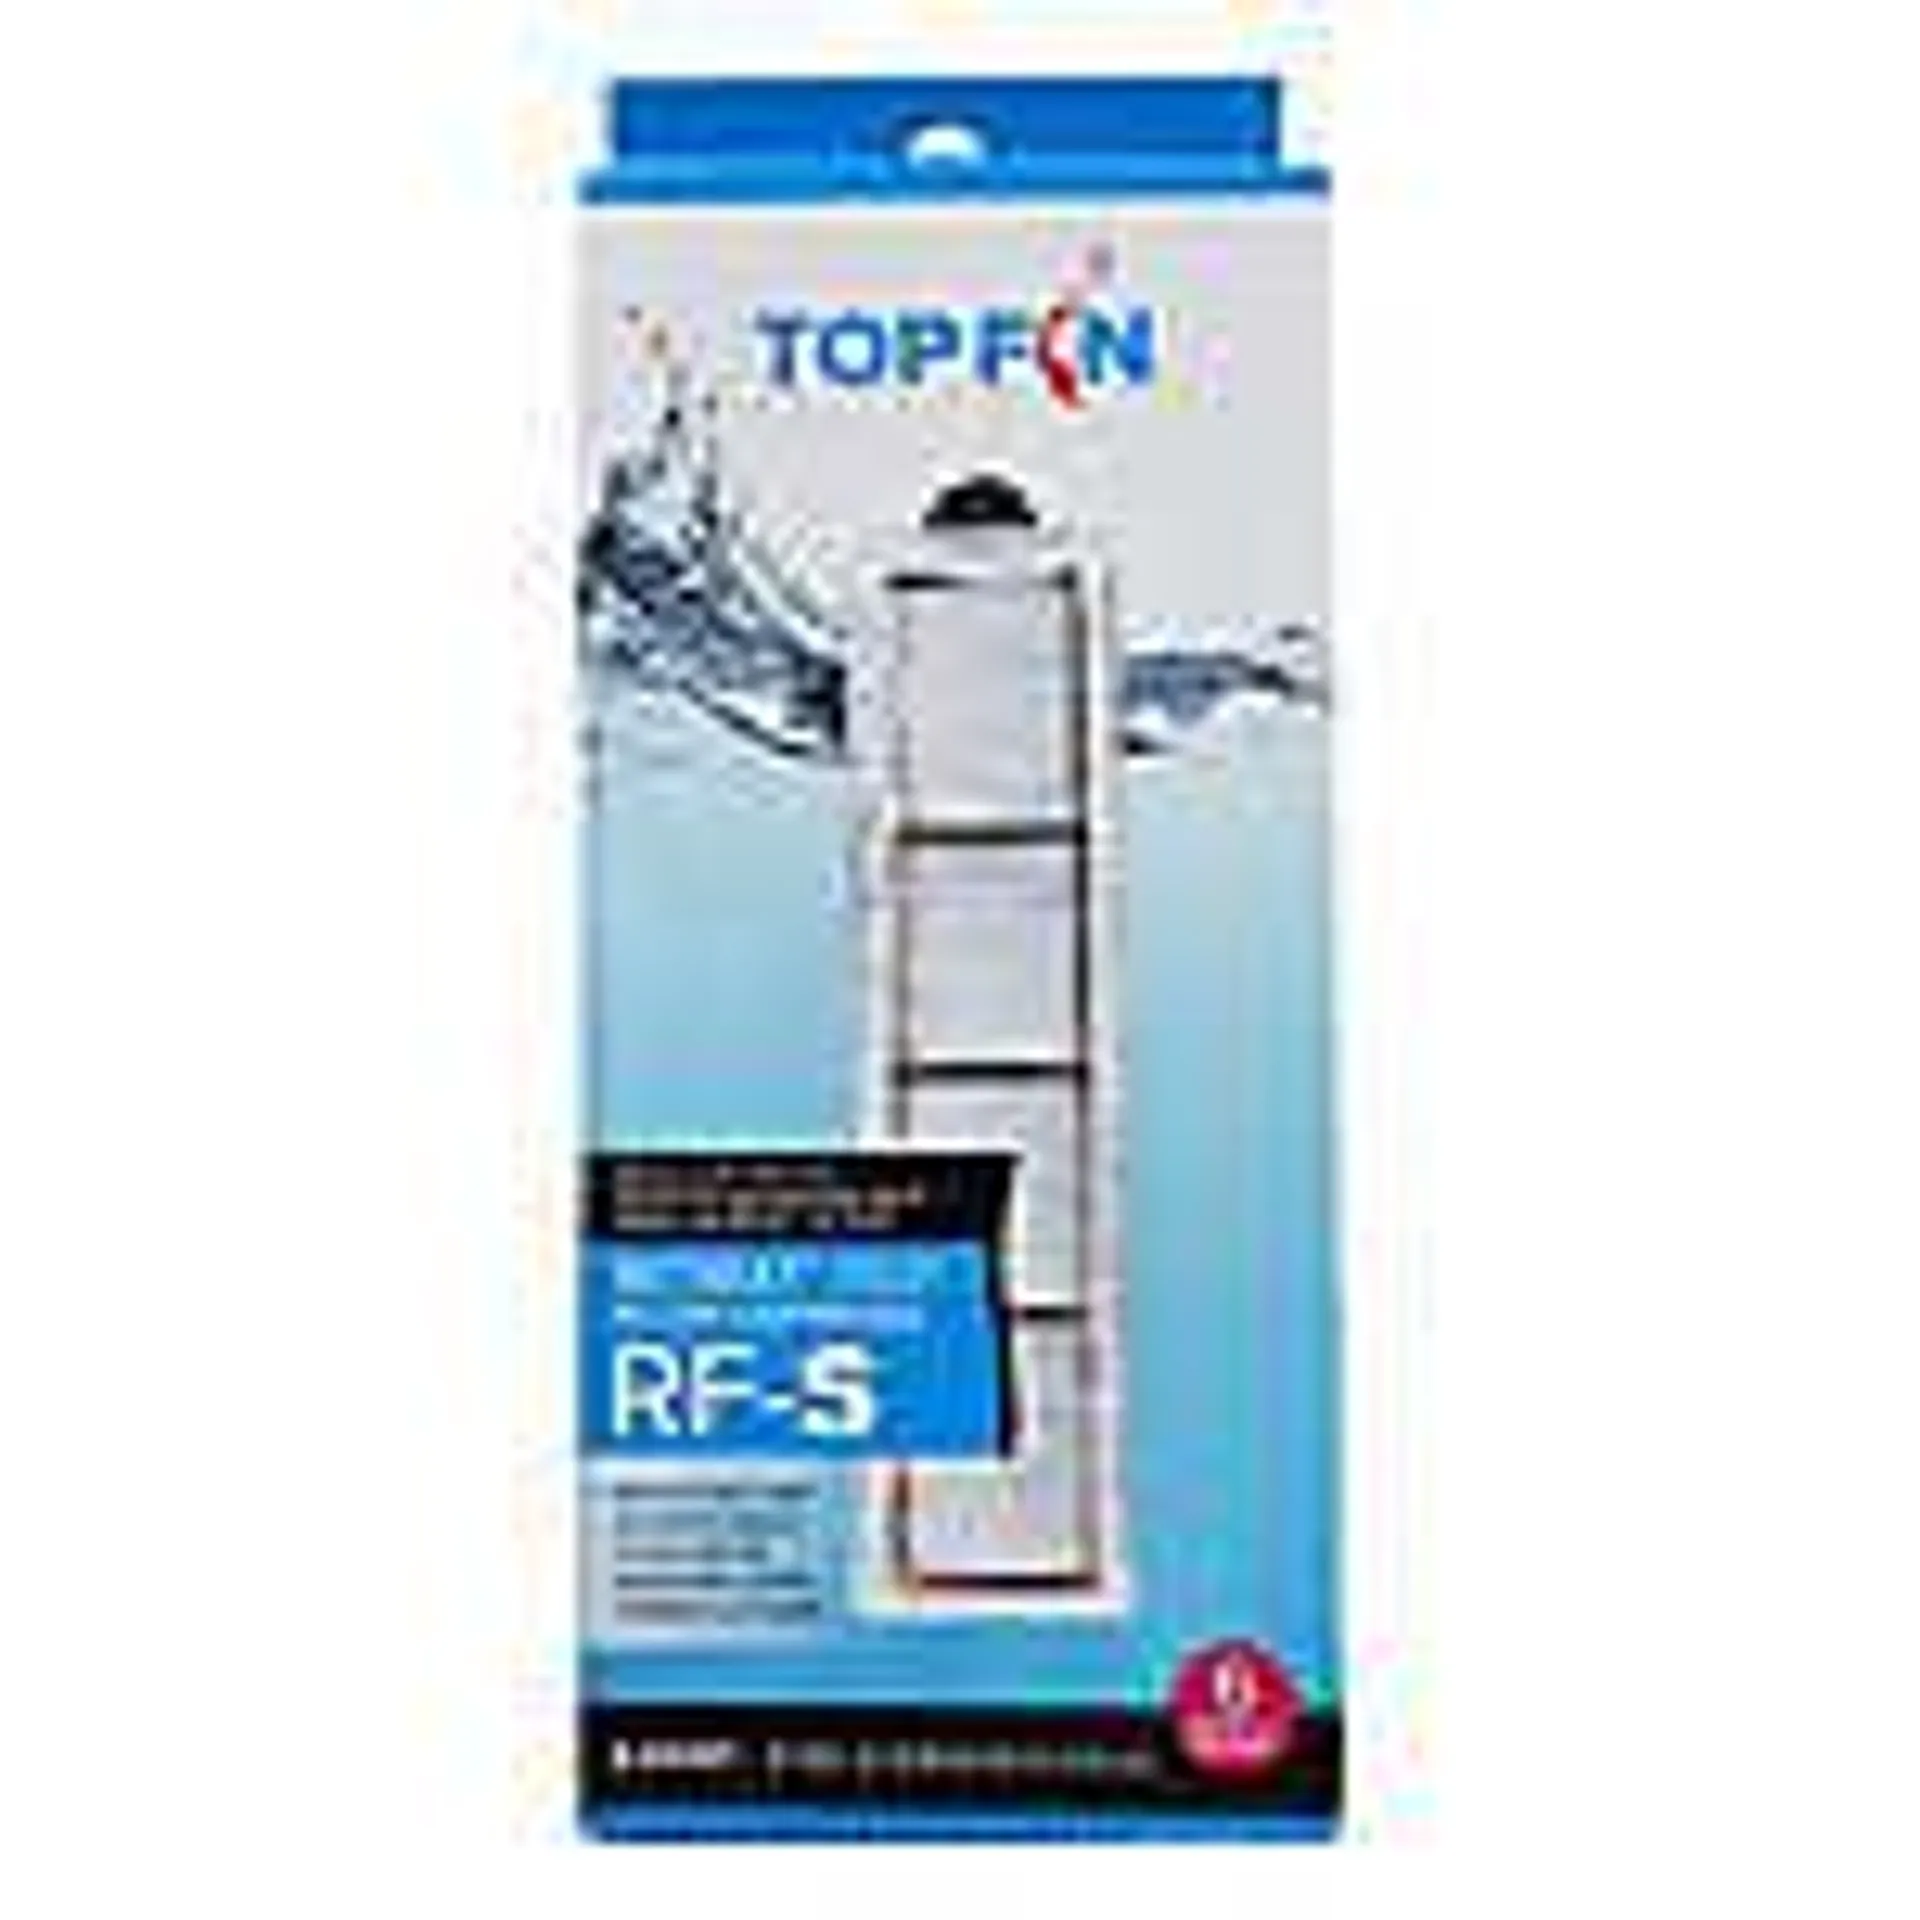 Top Fin ® Retreat ™ RF-S Filter Cartridges